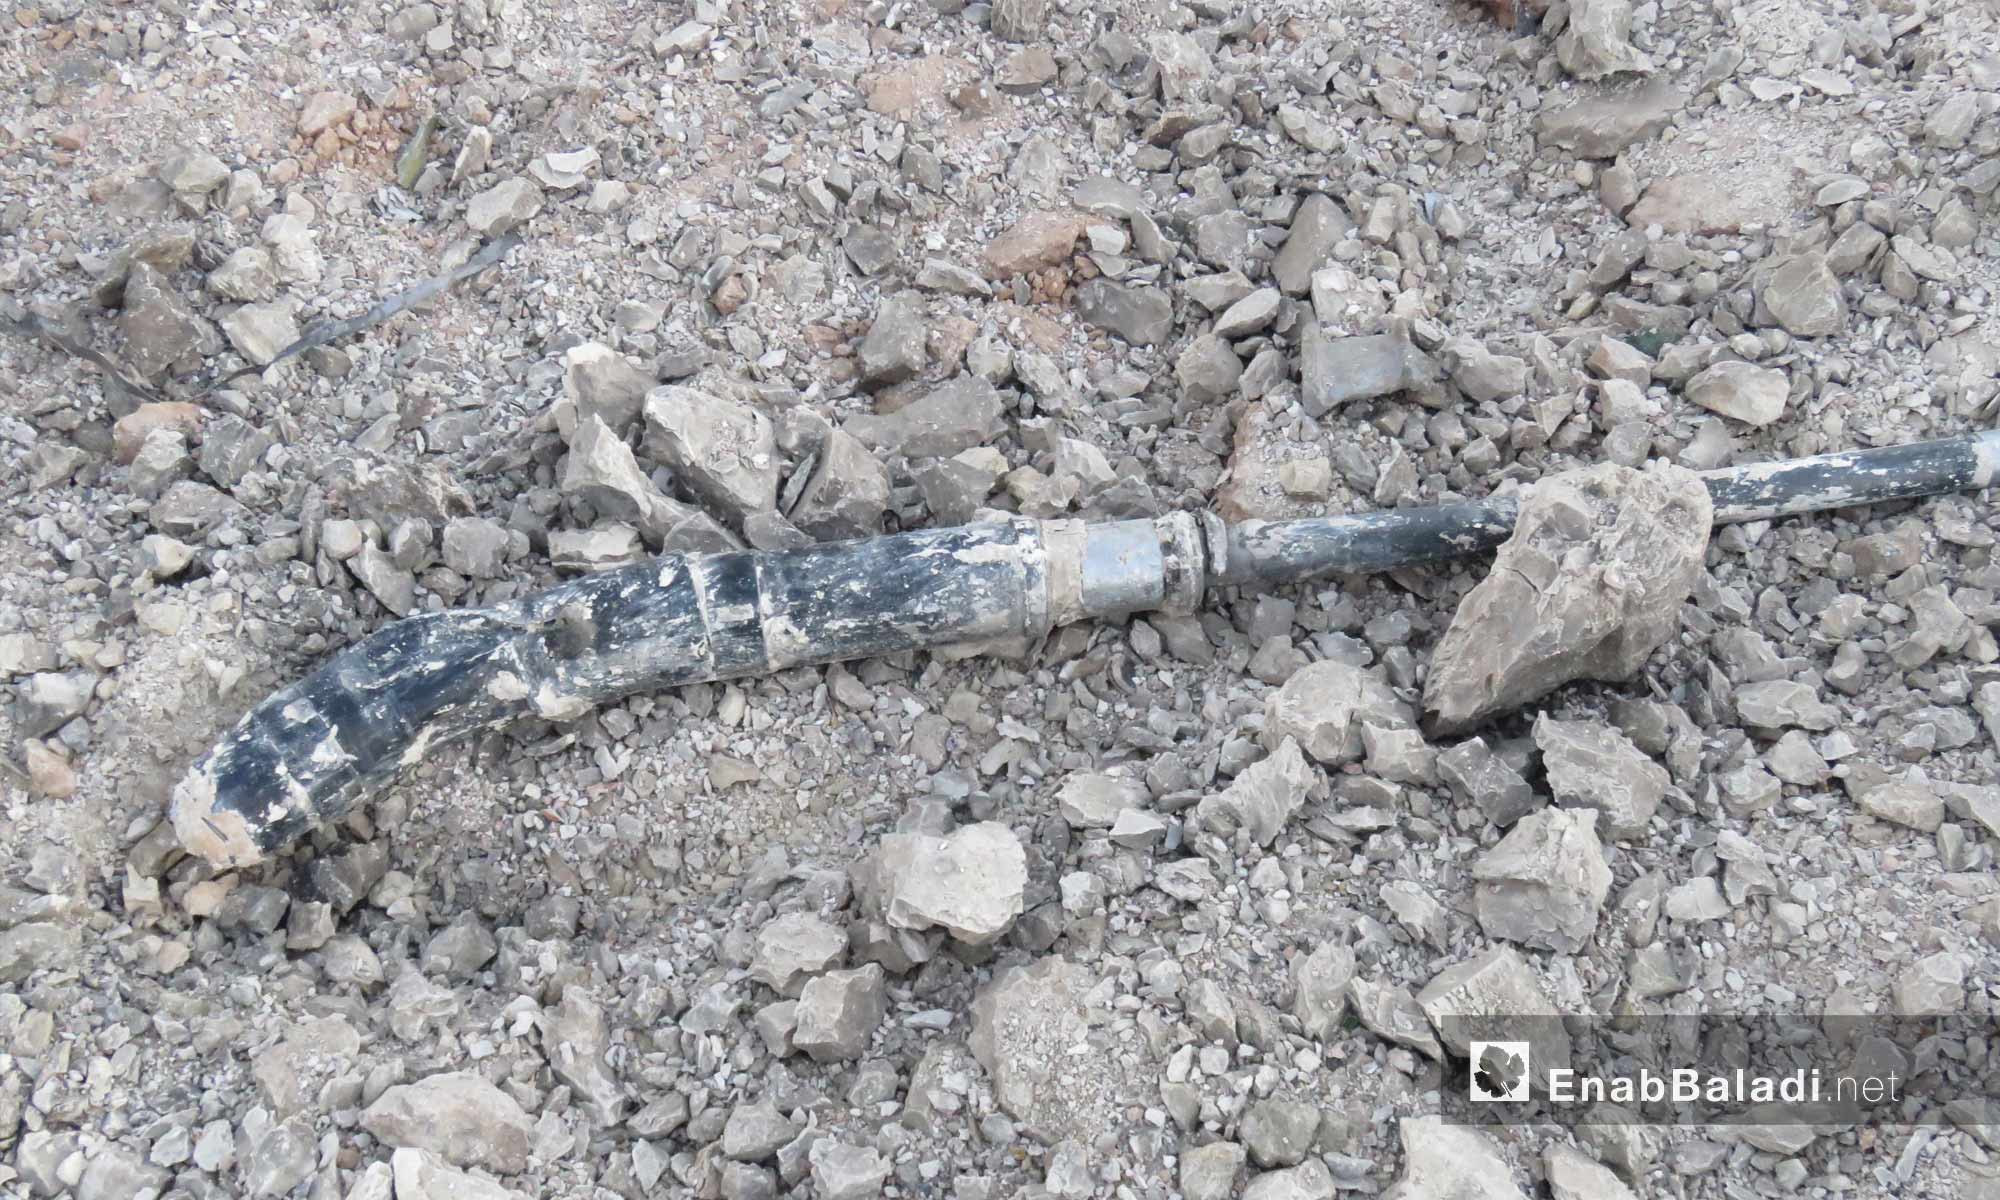 حطام طائرة حربية تابعة للنظام السوري من نوع سوخوي 22 أسقطتها الفصائل بالقرب من بلدة التمانعة في ريف إدلب الجنوبي- 14 من آب 2019 (عنب بلدي)